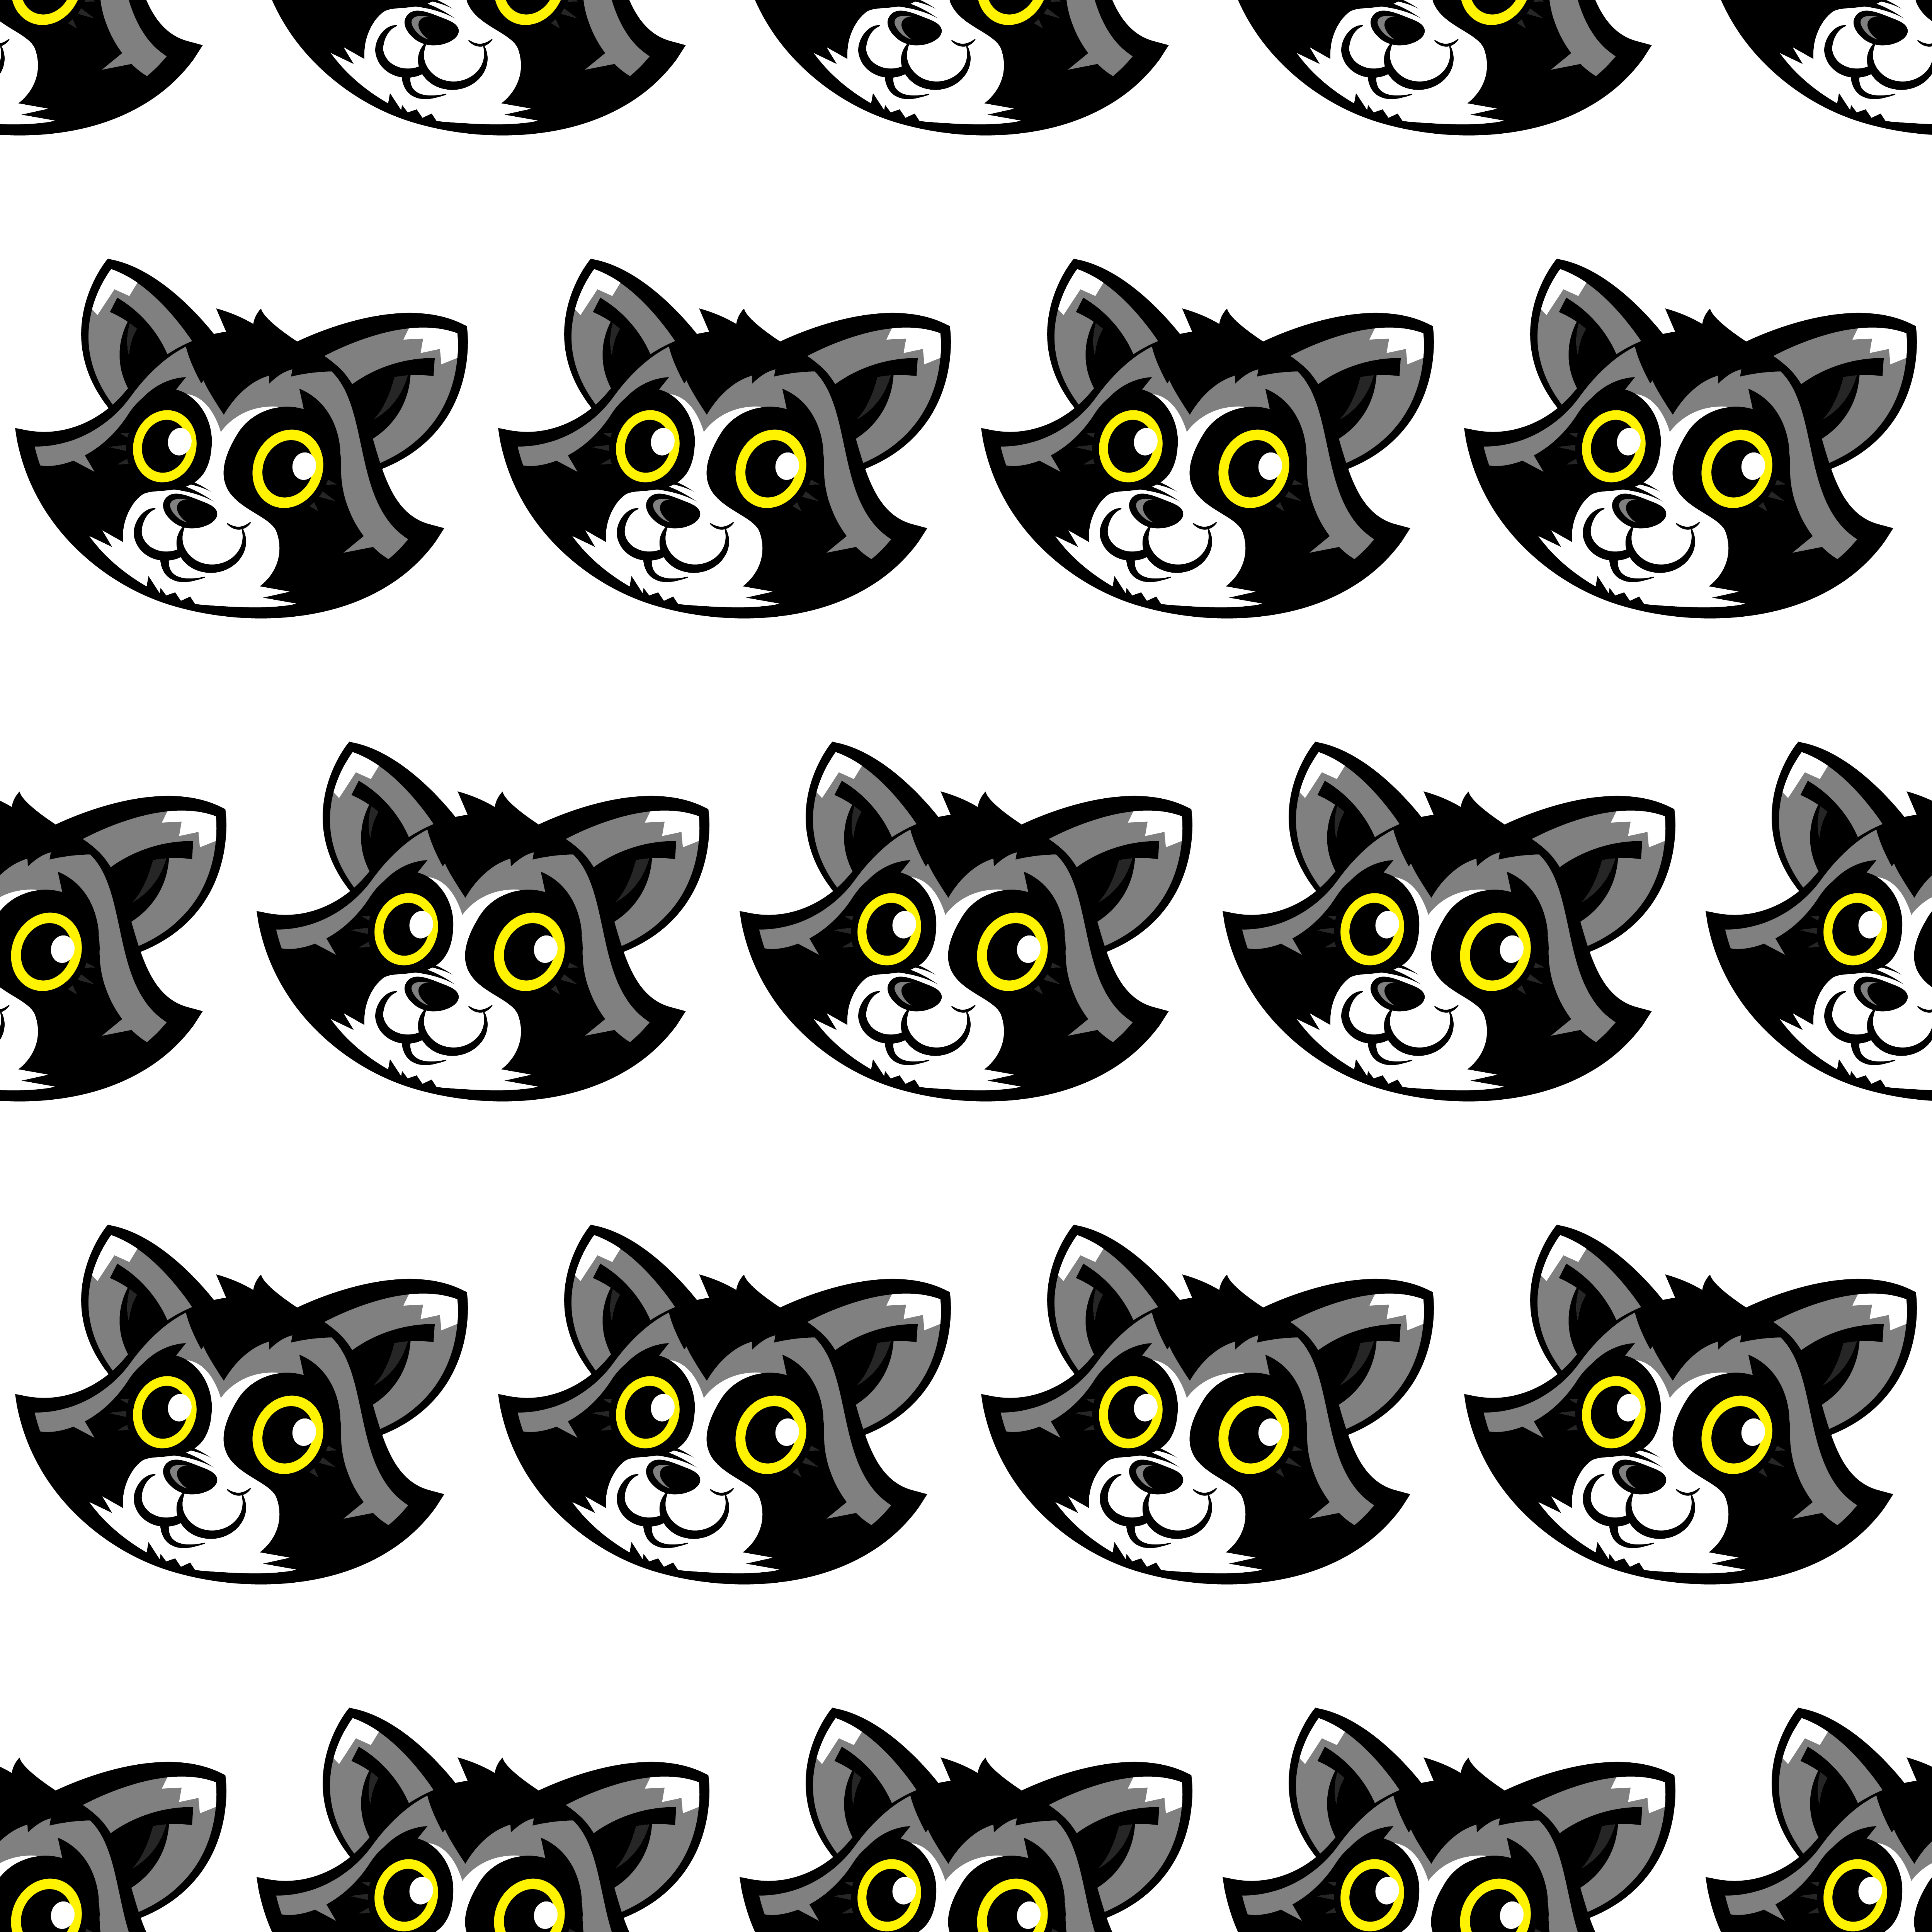 Download Raccoon Animal Face Vector 546776 Vector Art at Vecteezy